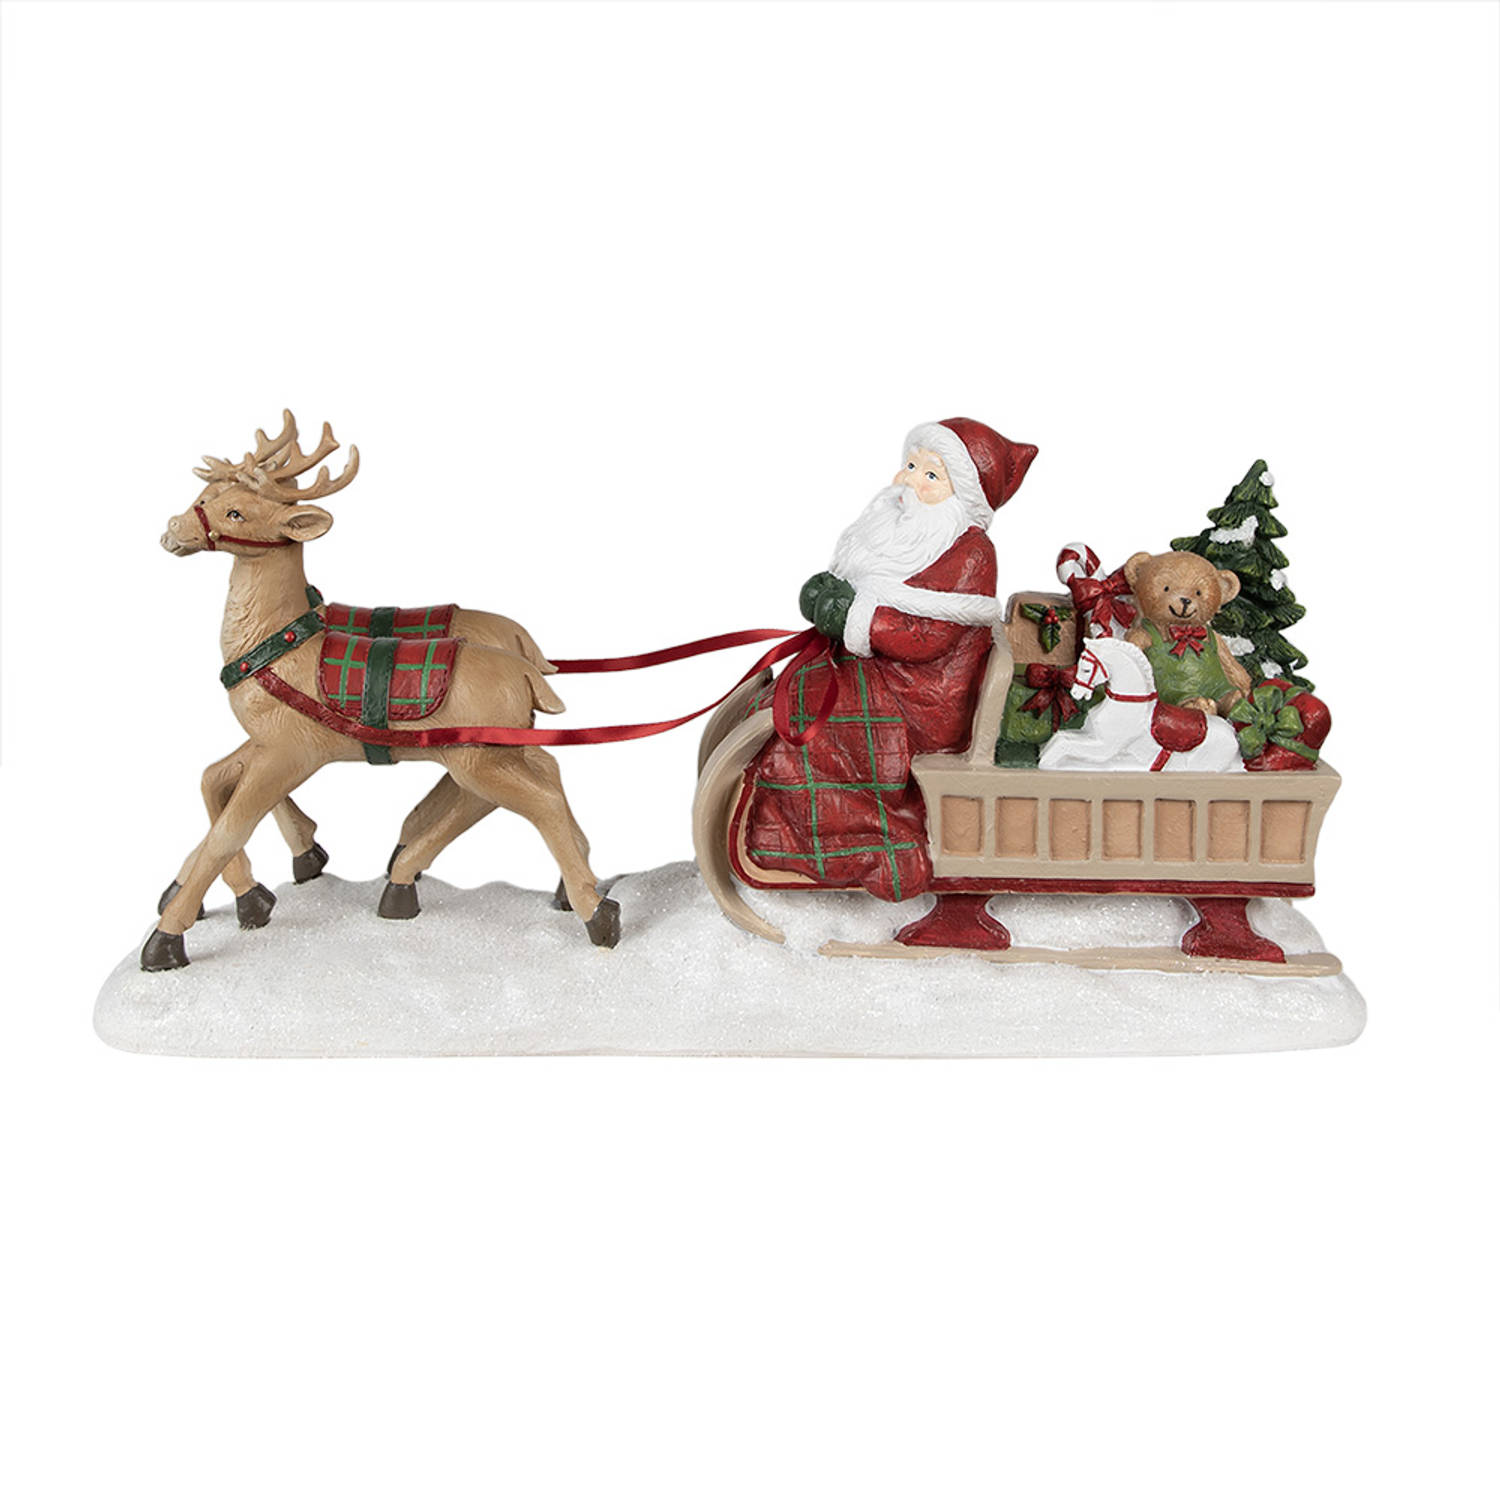 HAES DECO - Kerstman deco Figuur - Formaat 41x11x19 cm - Kleur Rood - Materiaal Polyresin - Kerst Figuur, Kerstdecoratie